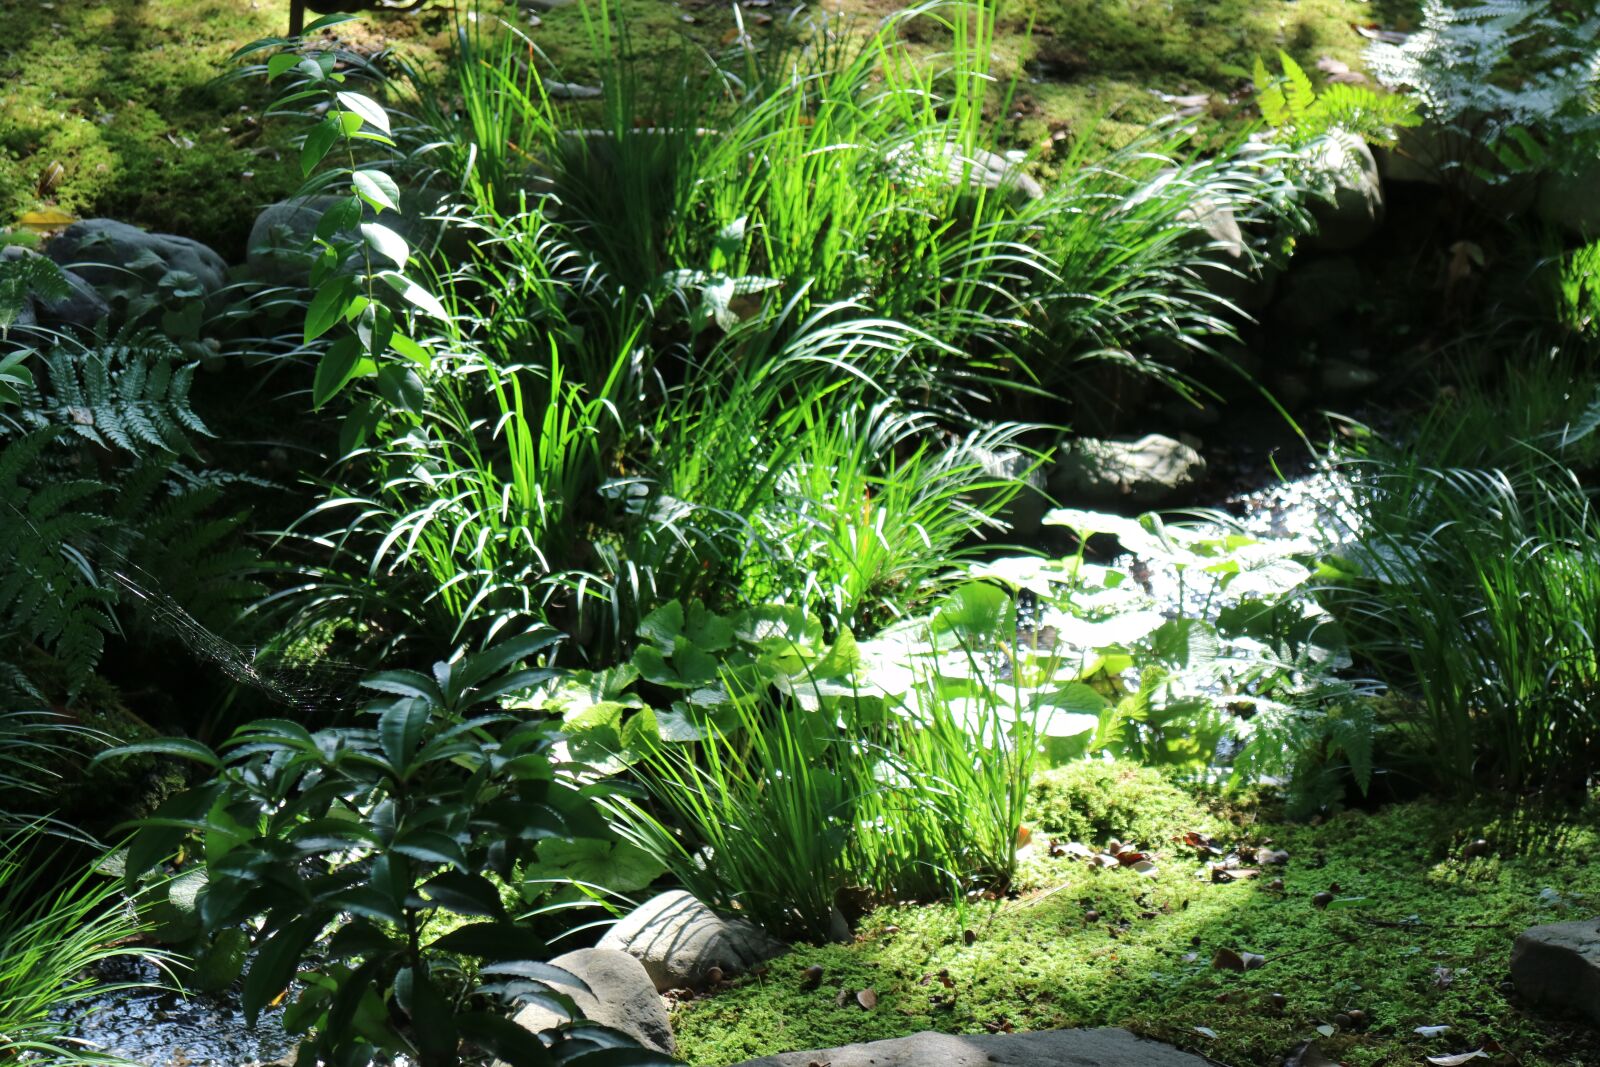 Canon EOS M3 sample photo. Japan garden, brook, natural photography